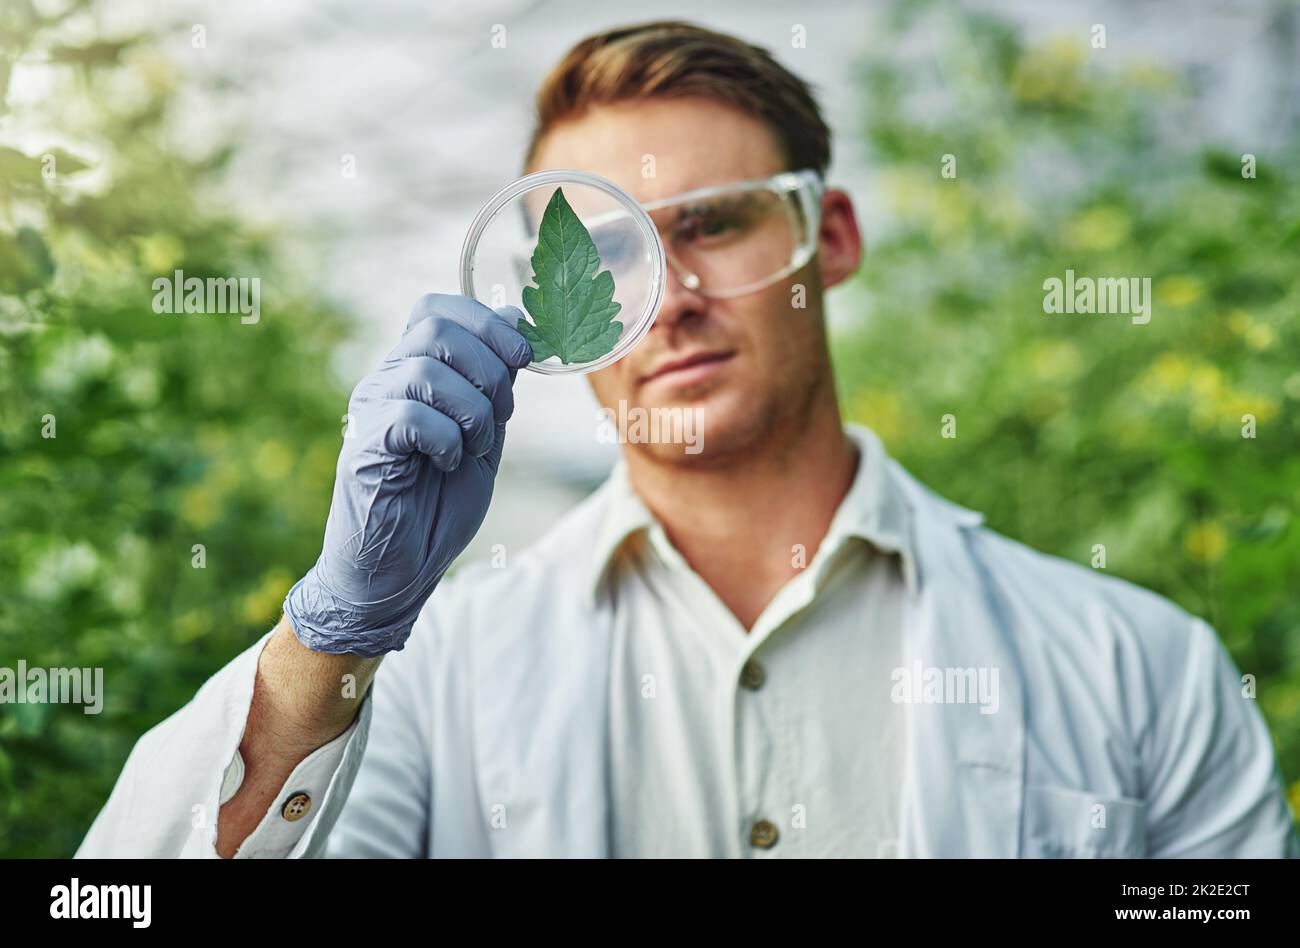 Ich könnte eine neue Pflanzenart entdeckt haben. Aufnahme eines hübschen jungen Wissenschaftlers, der eine Pflanzenprobe im Freien untersucht. Stockfoto